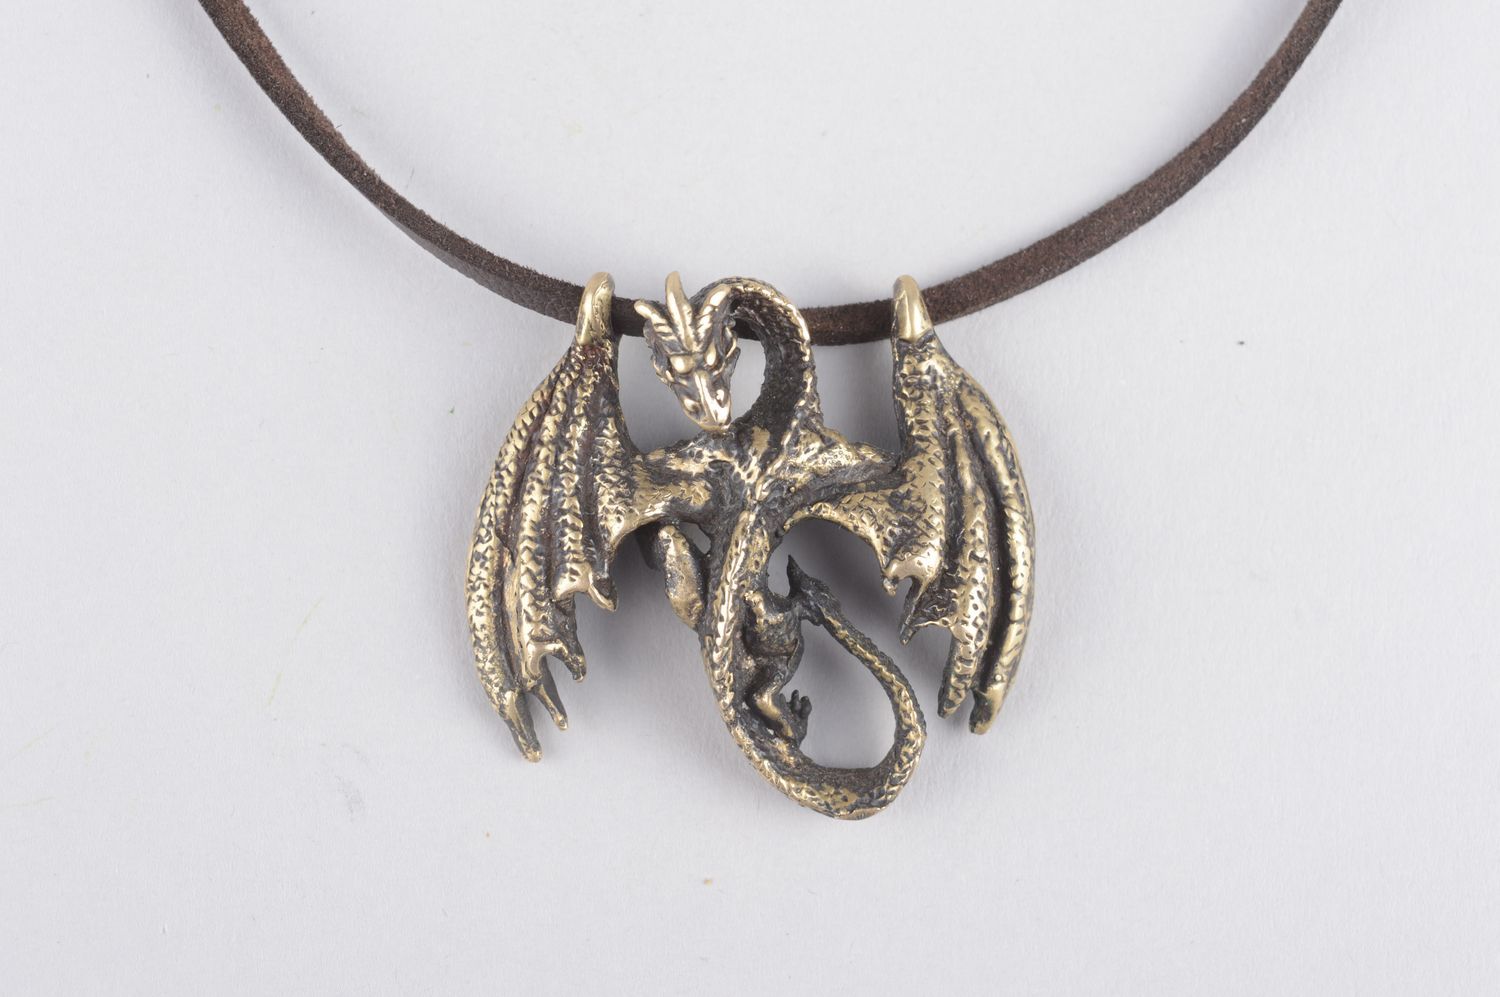 Украшение из бронзы украшение ручной работы кулон на шею авторский кулон дракон фото 5